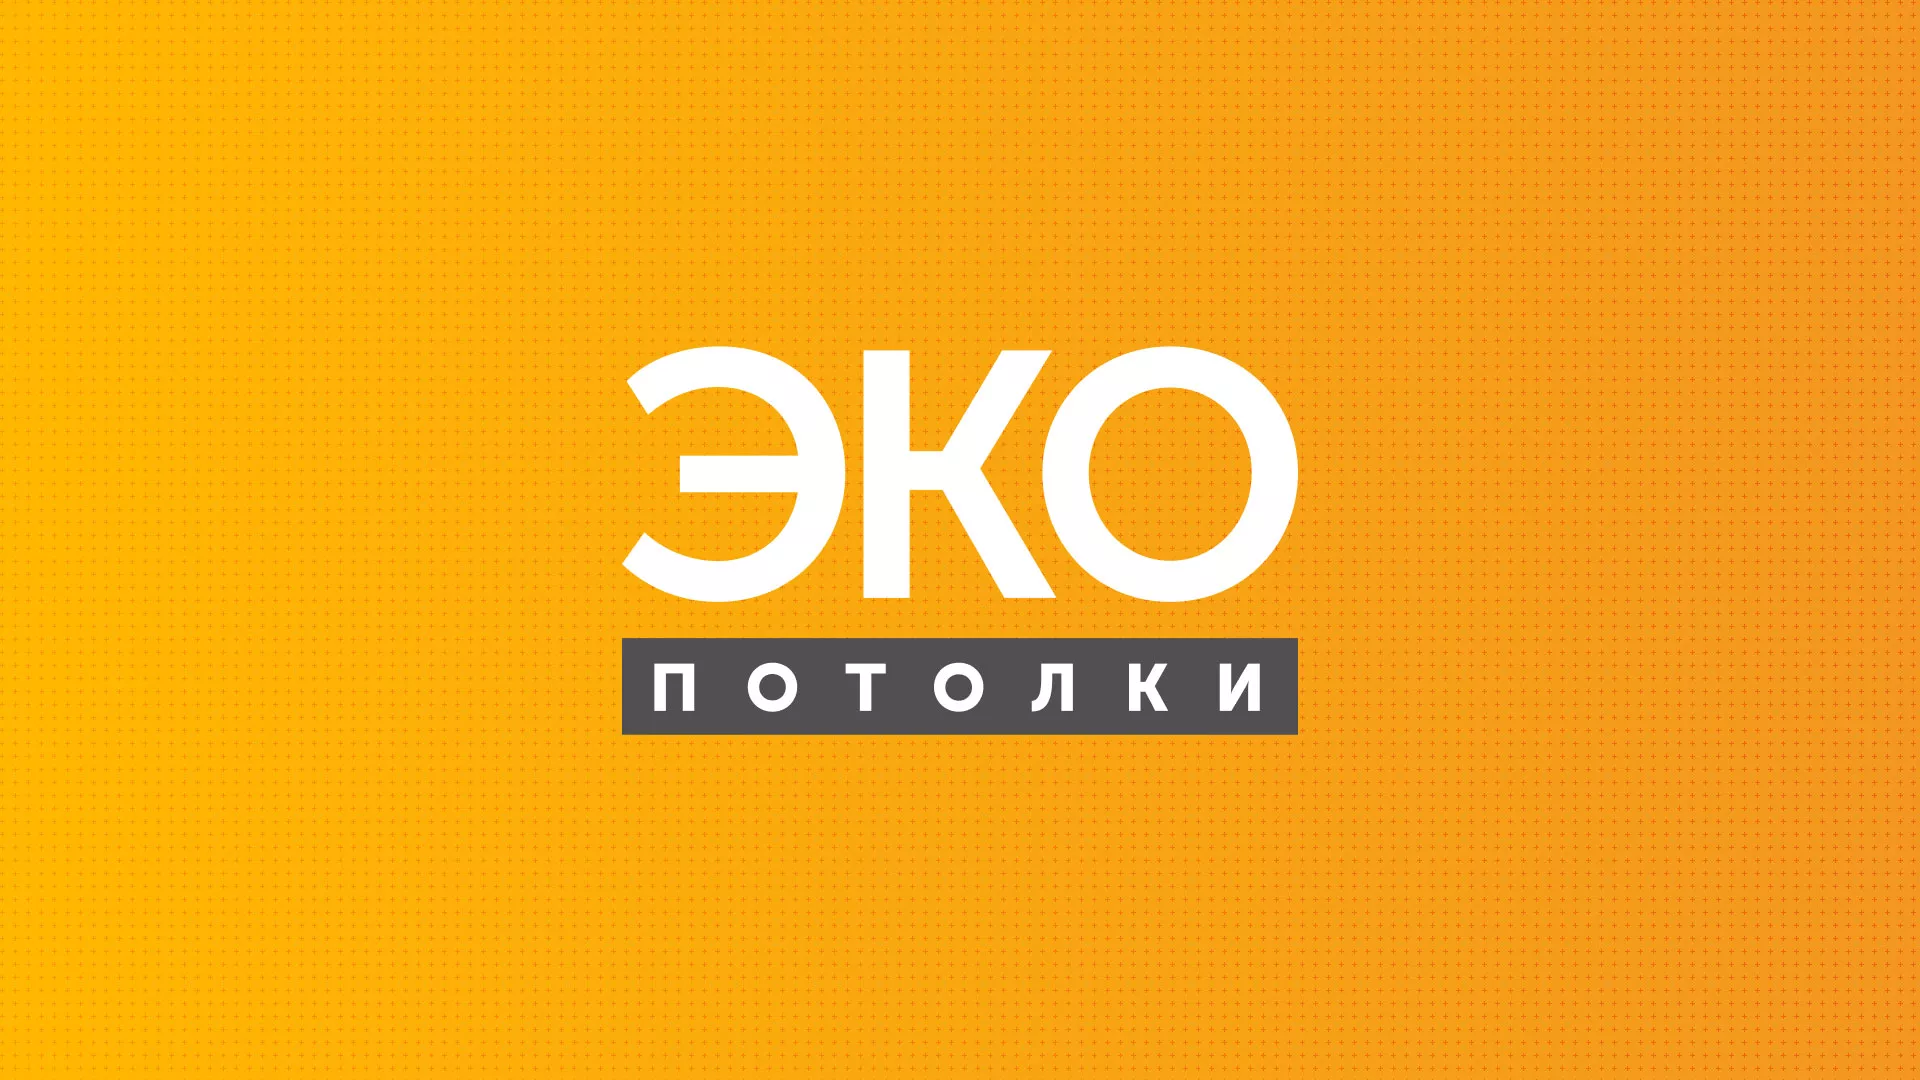 Разработка сайта по натяжным потолкам «Эко Потолки» в Красногорске